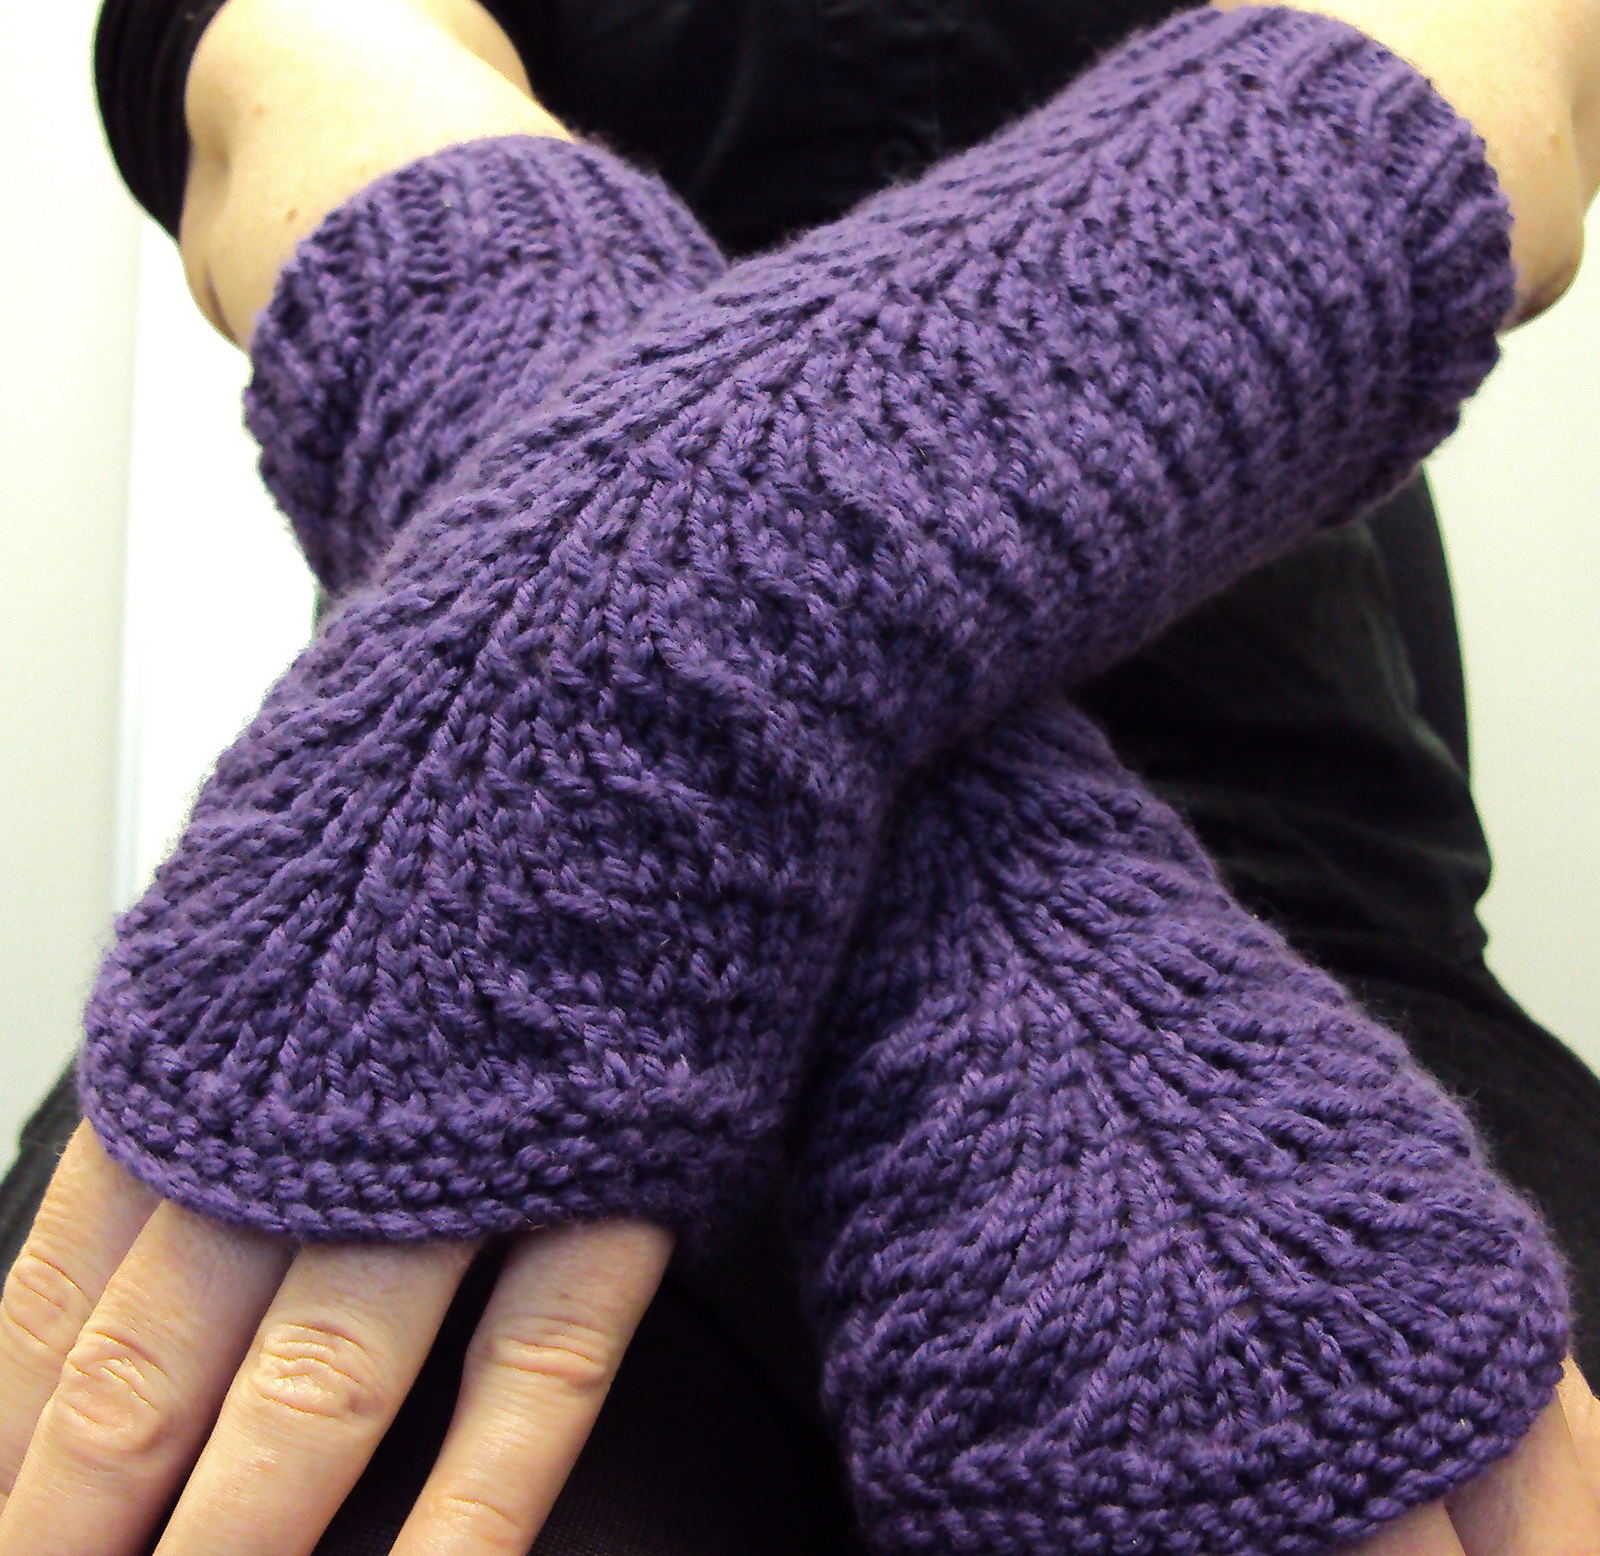 Free Knitting Pattern for Easy Lana's Gloves